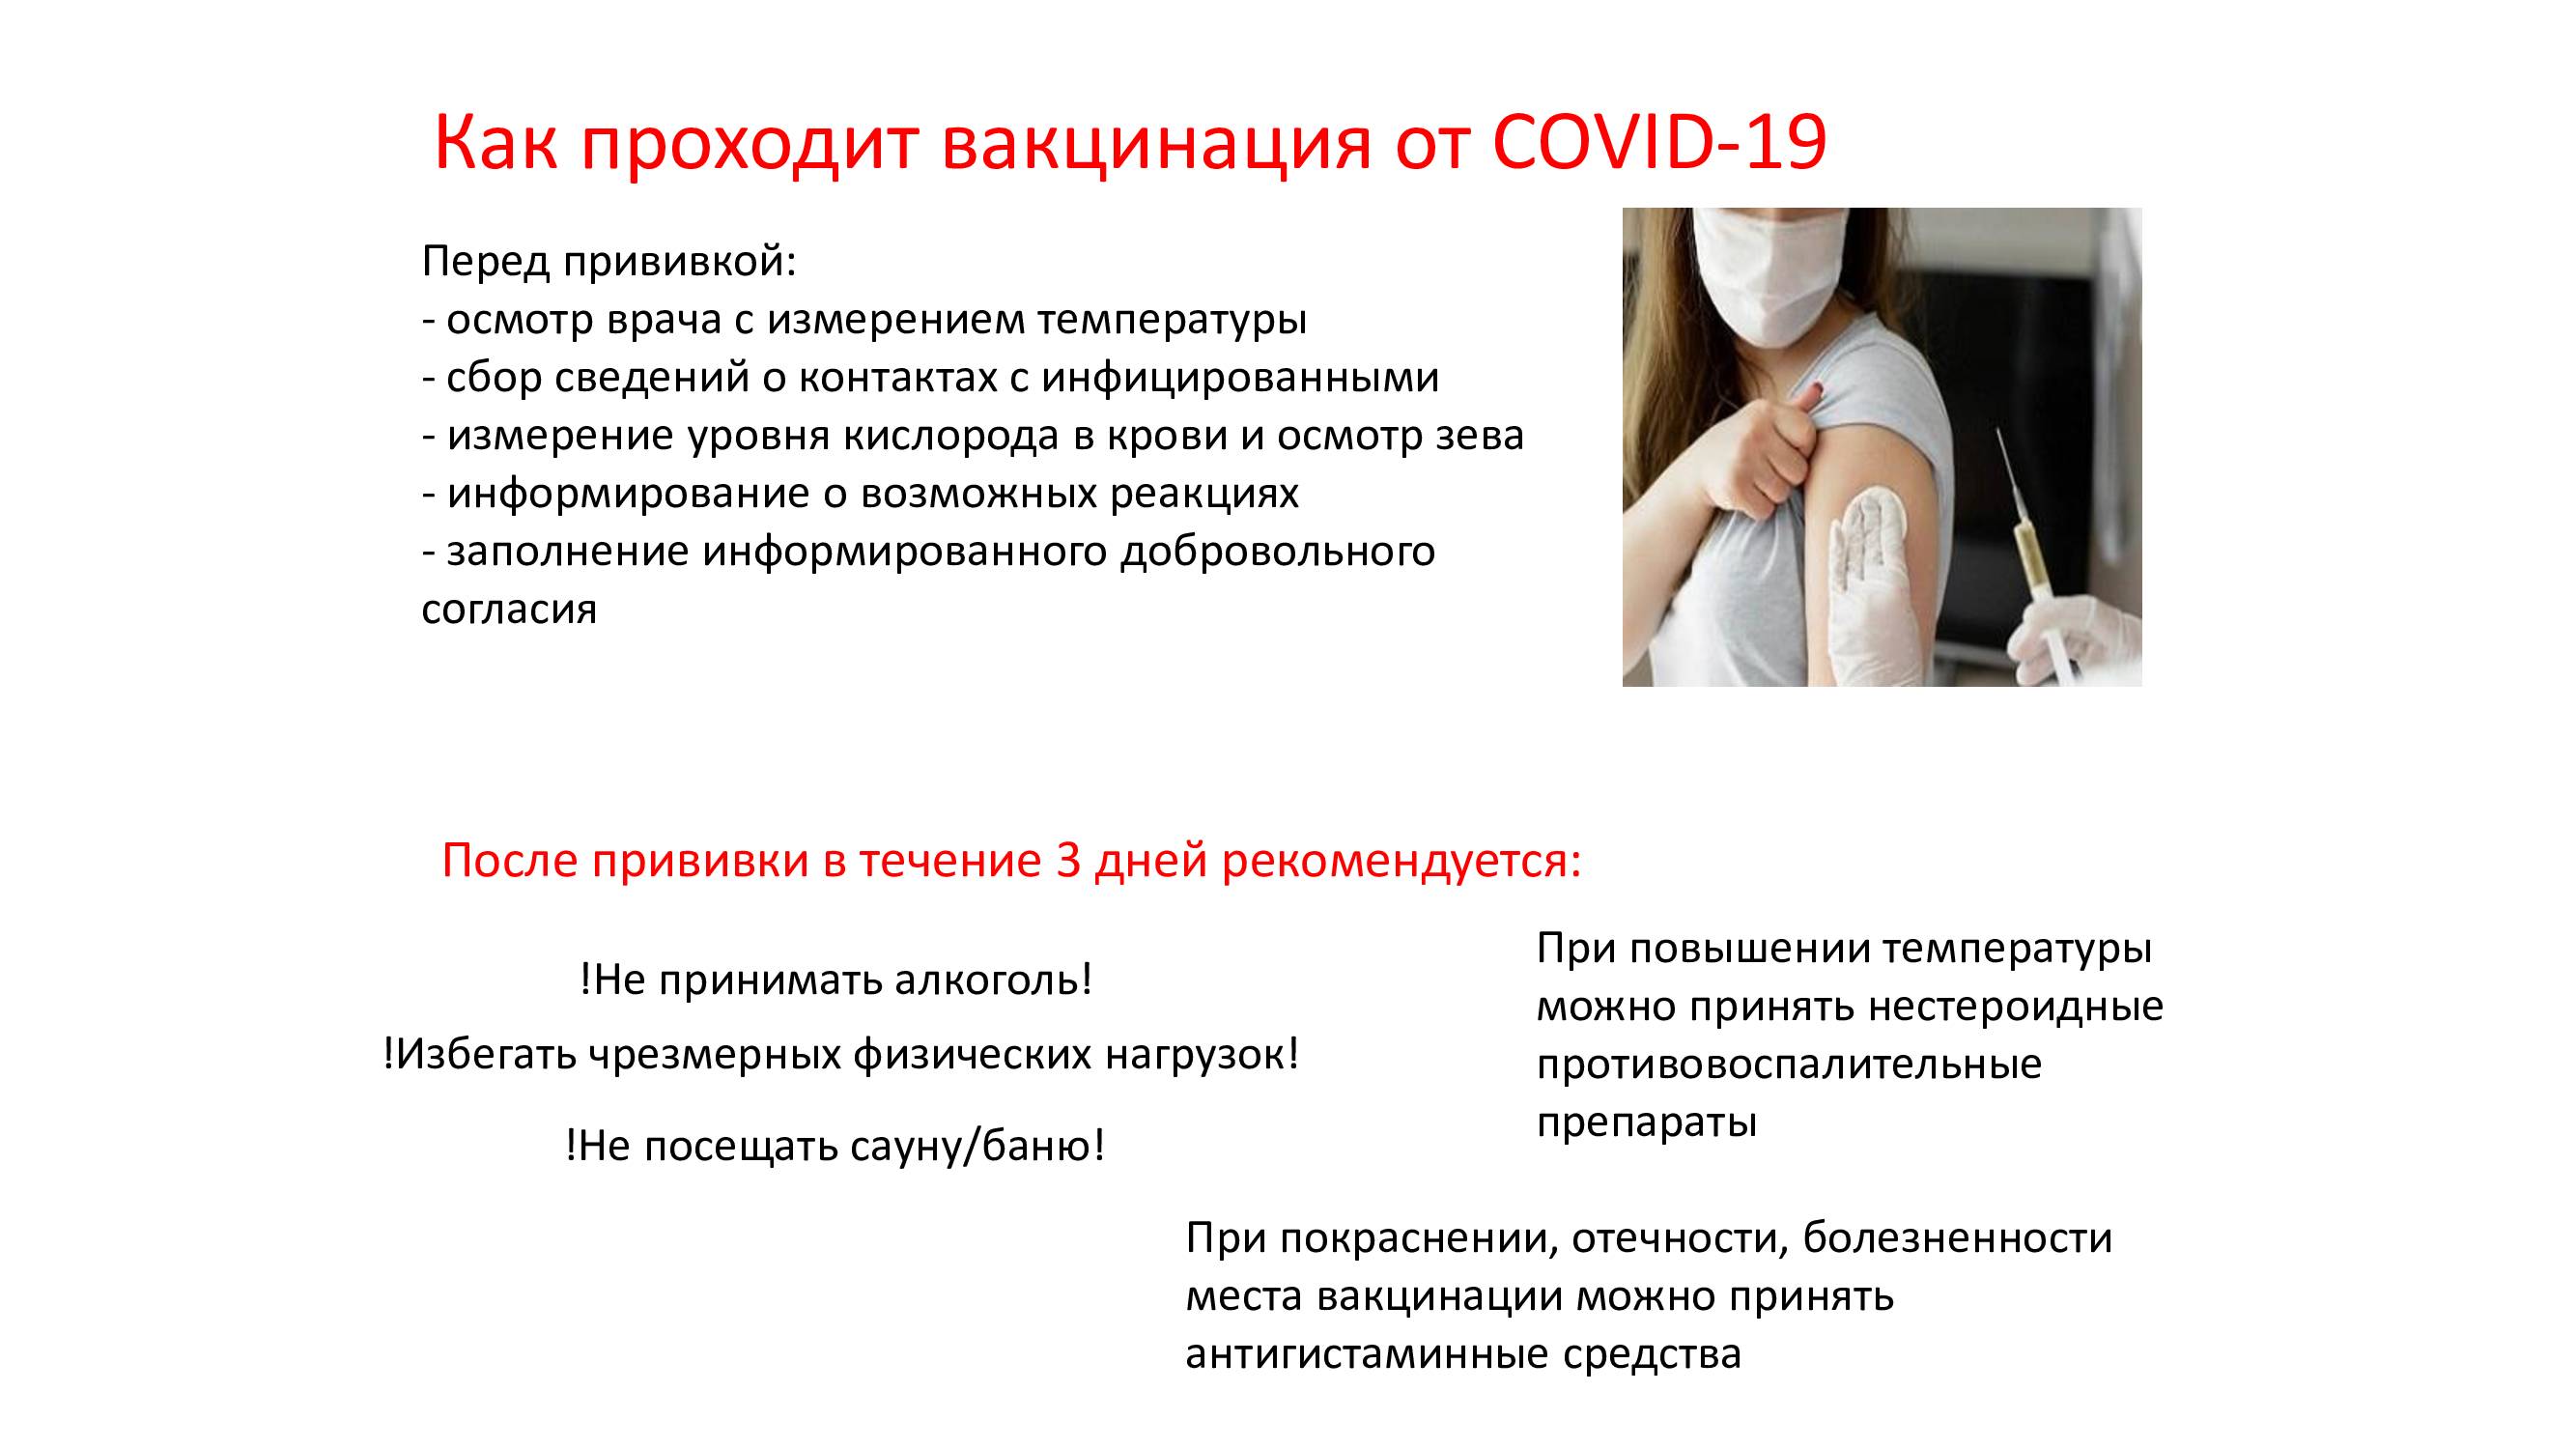 Вакцинируйтесь — коронавирус – симптомы, признаки, общая информация, ответы на вопросы